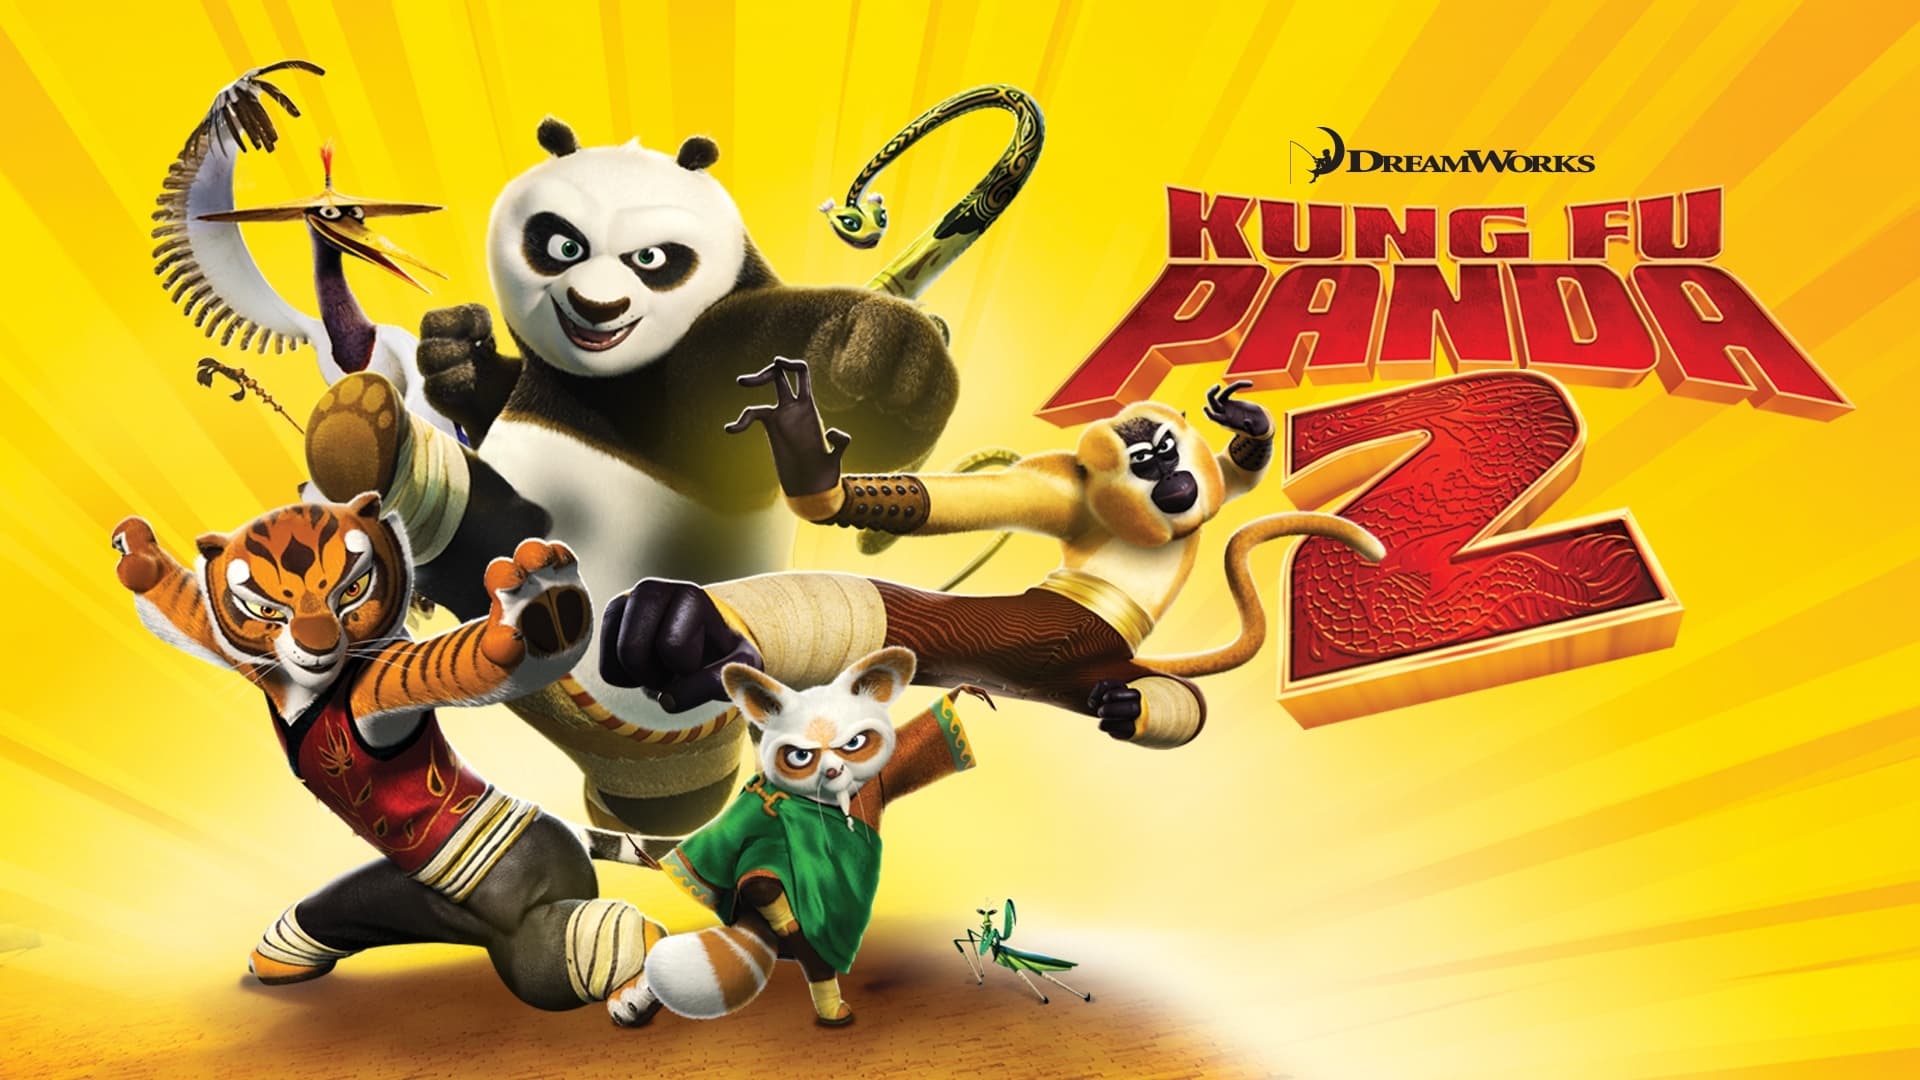 Kung-fu Panda 2